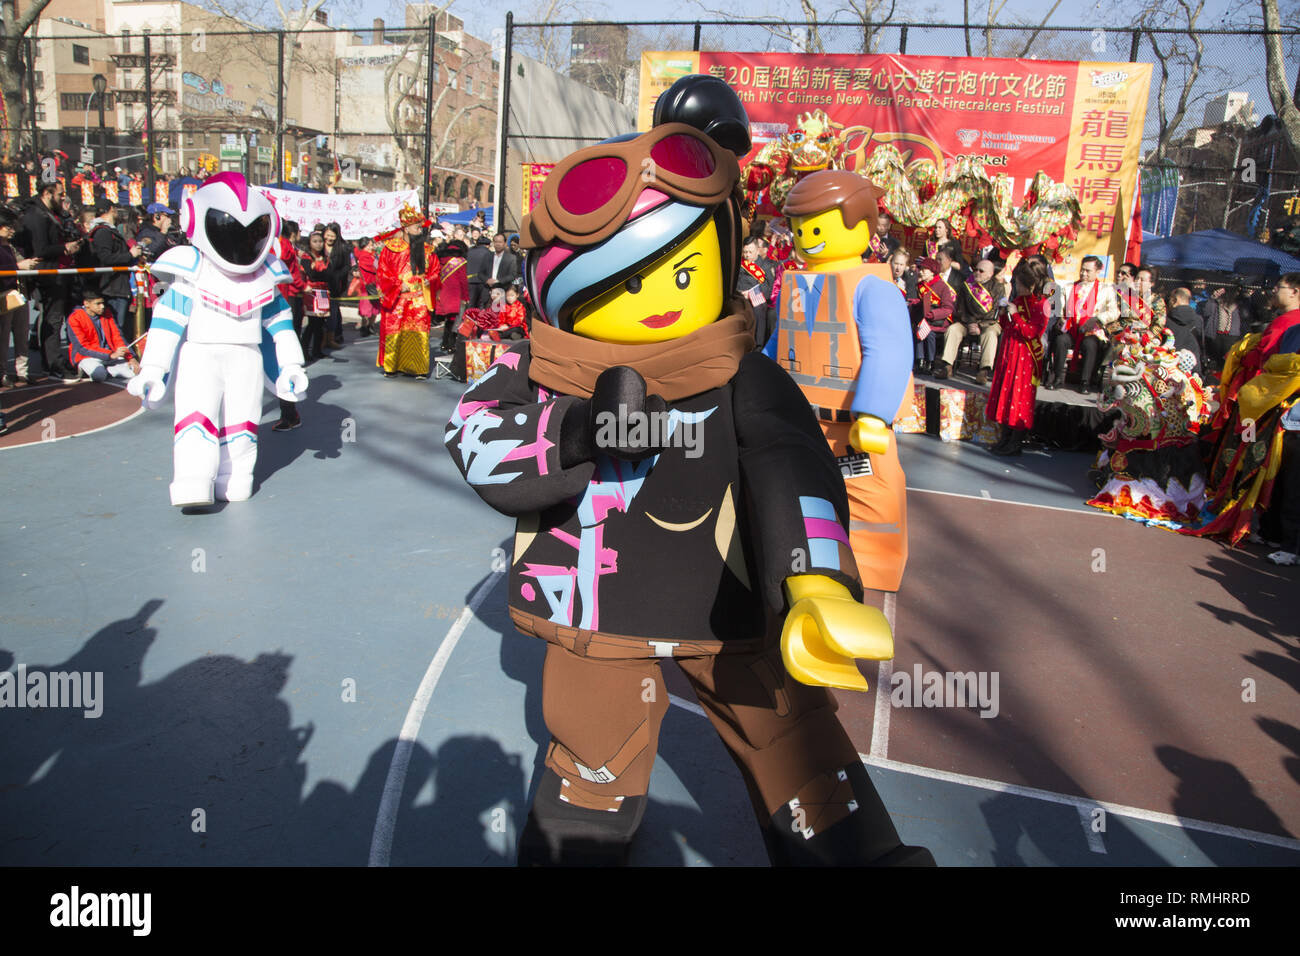 Personaggi del film Lego ll intrattenere gli spettatori durante il Capodanno cinese accogliente nell'anno del maiale. La città di New York. Foto Stock